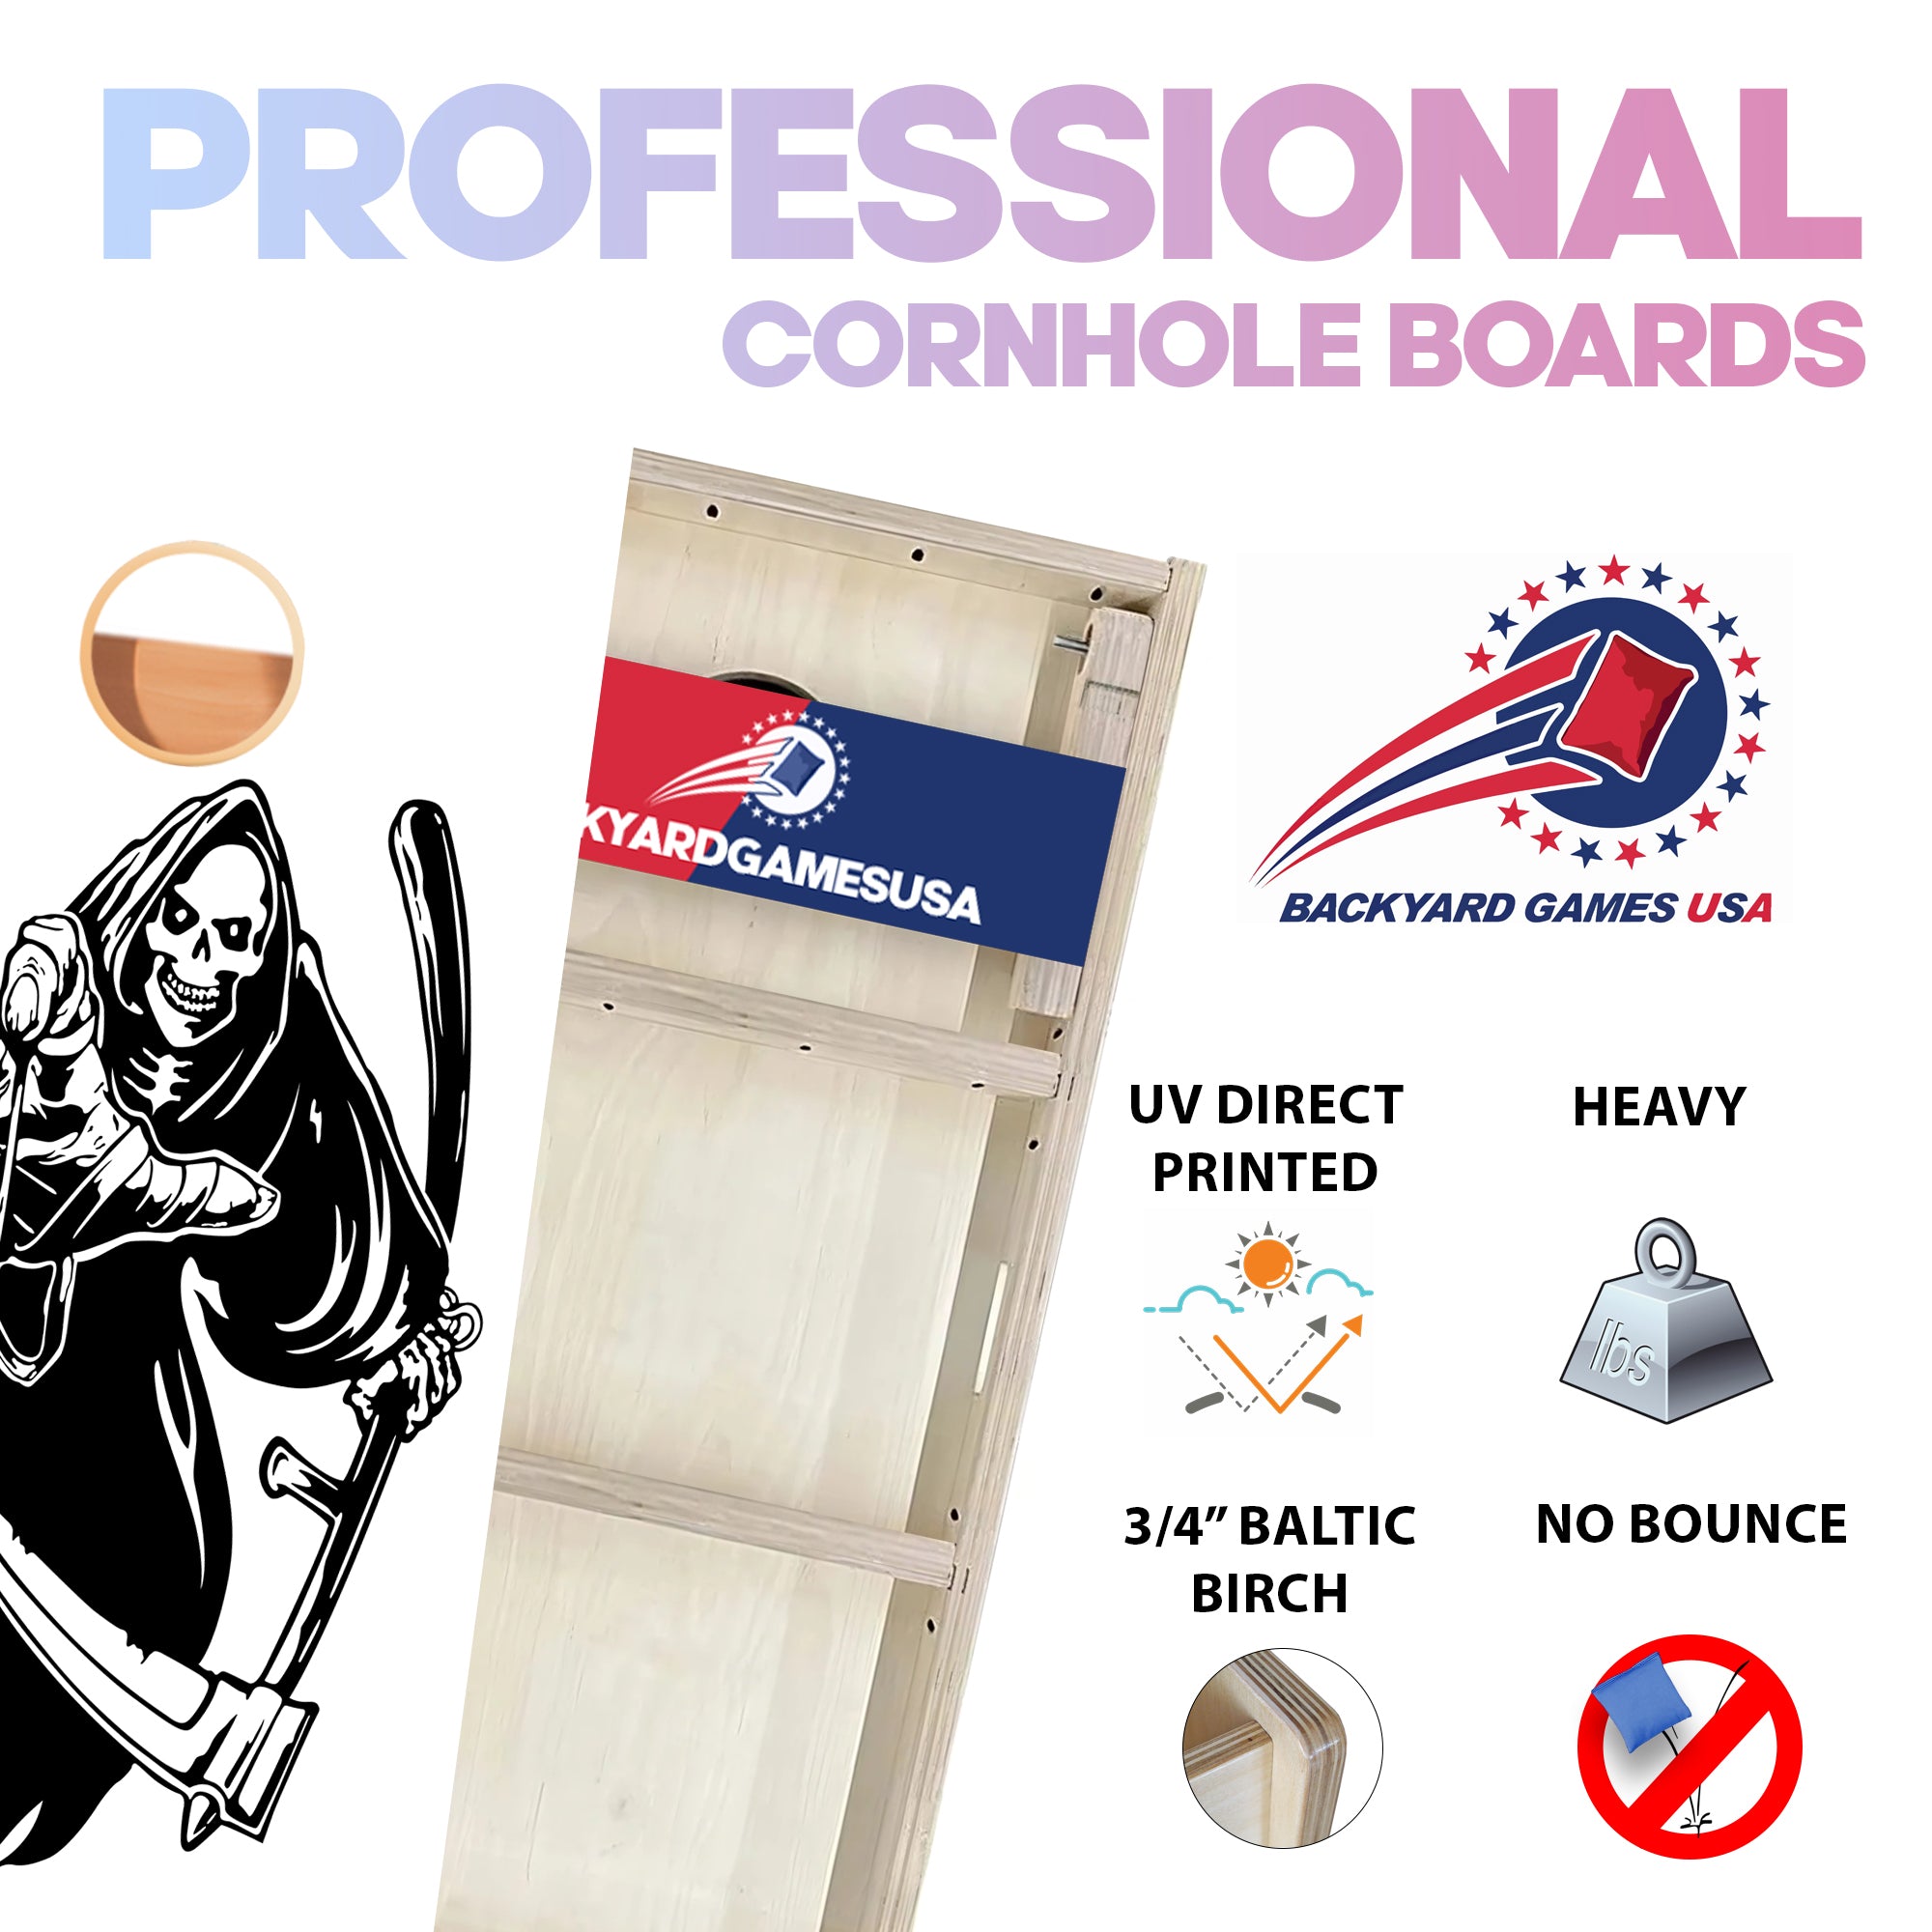 White Reaper Professional Cornhole Boards